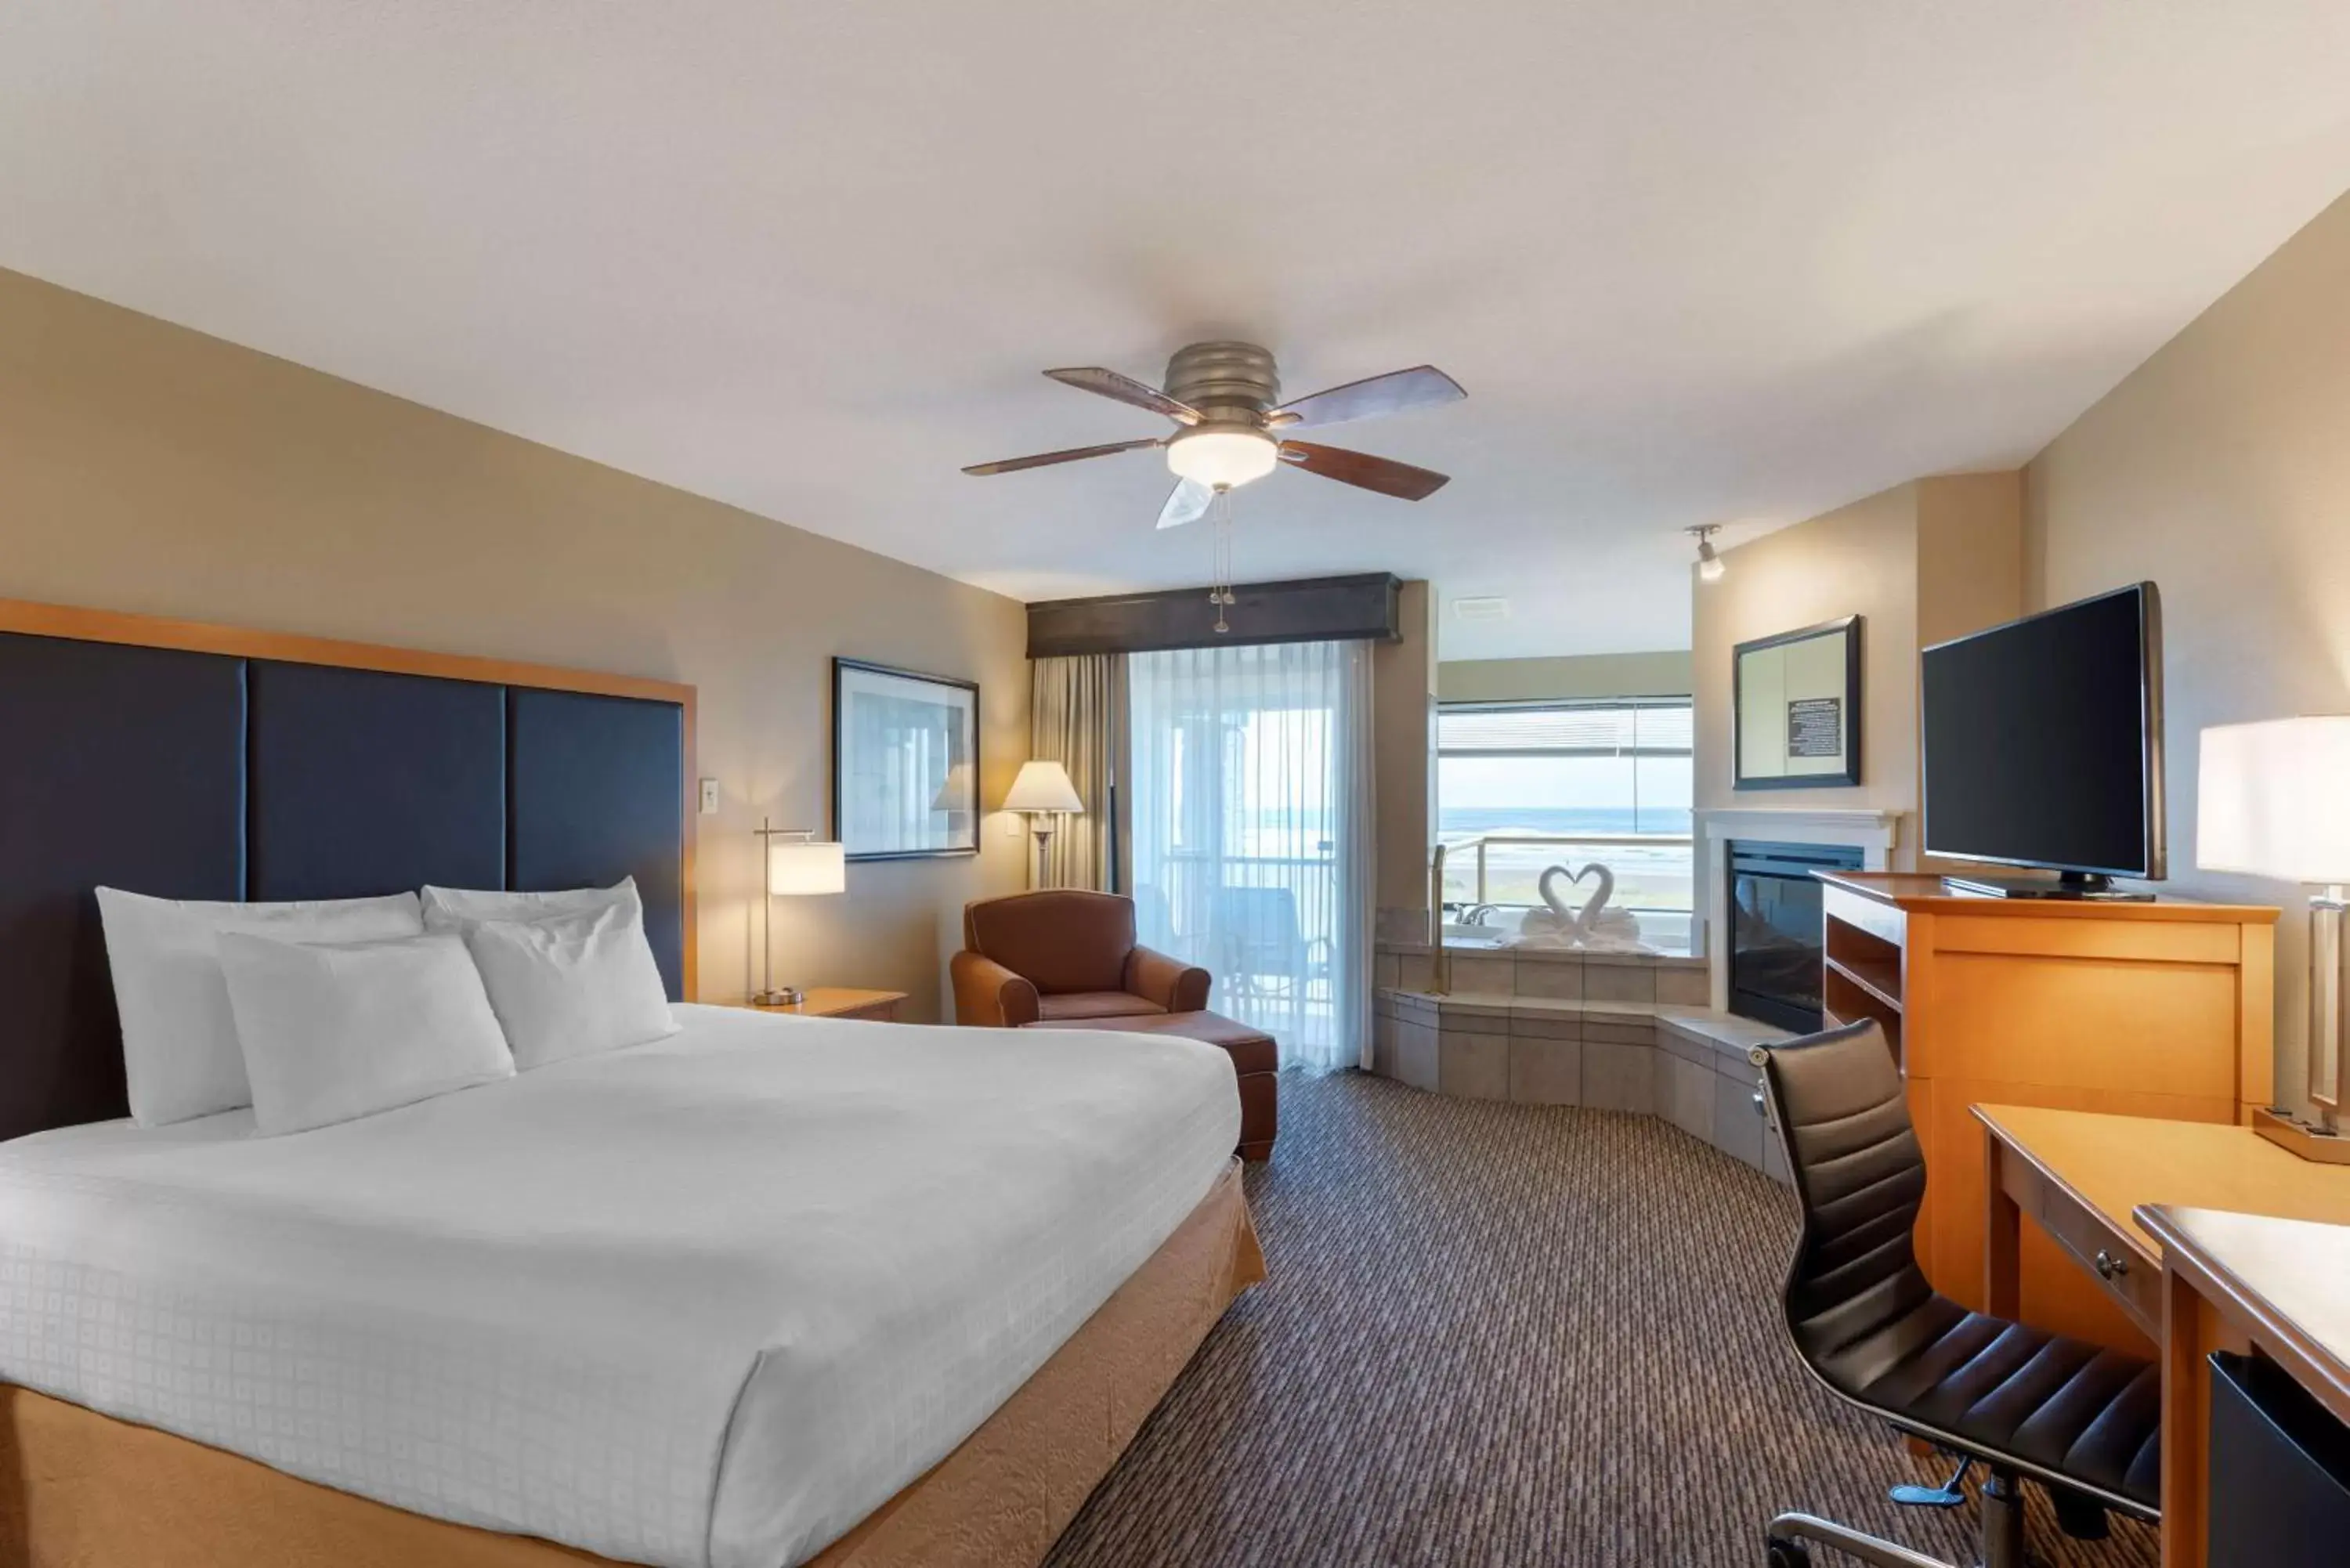 Bedroom, TV/Entertainment Center in Best Western Plus Ocean View Resort